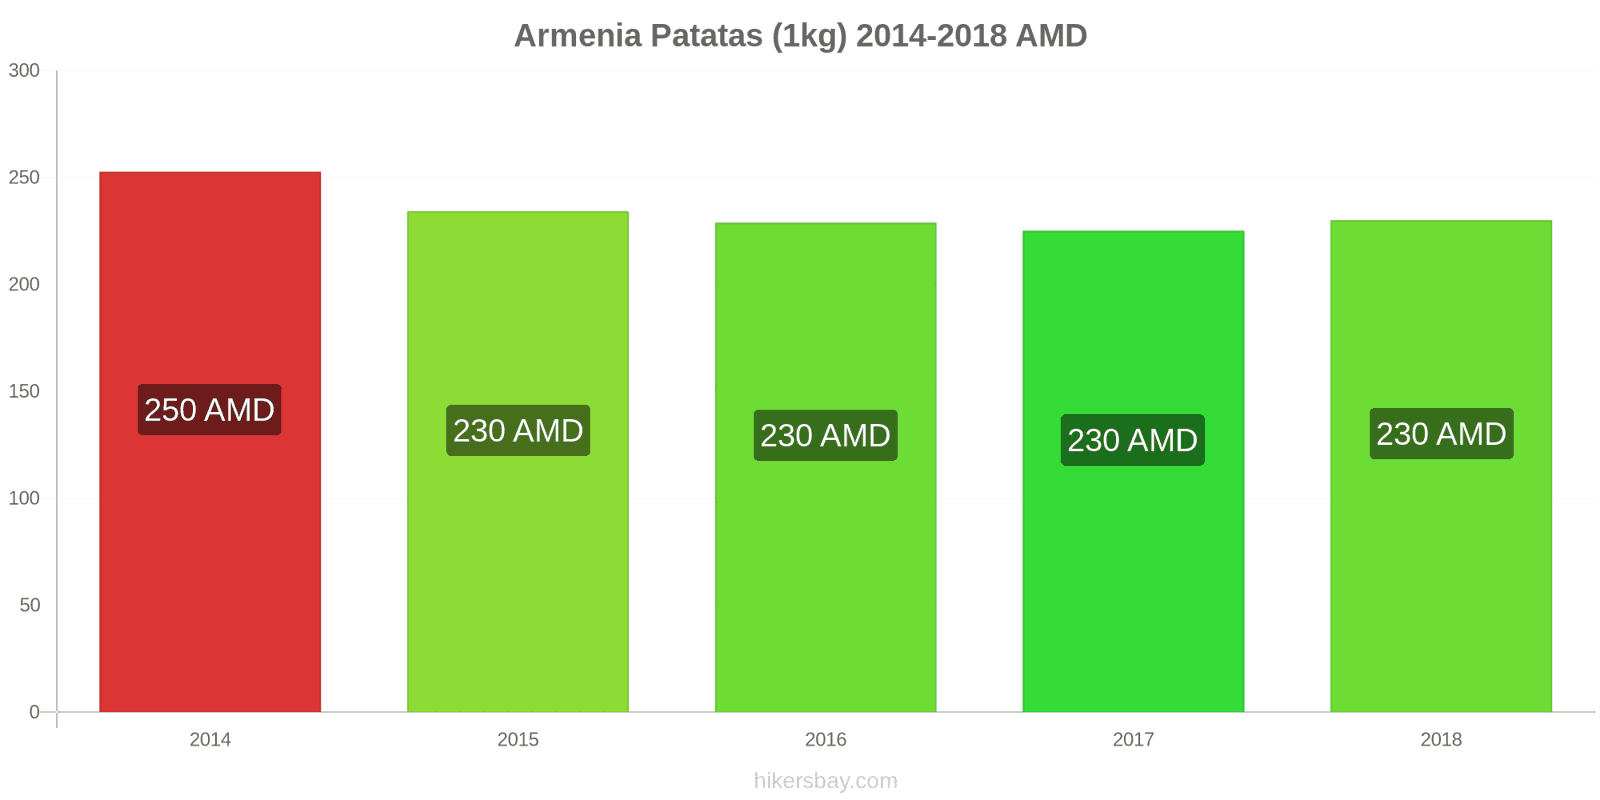 Armenia cambios de precios Patatas (1kg) hikersbay.com